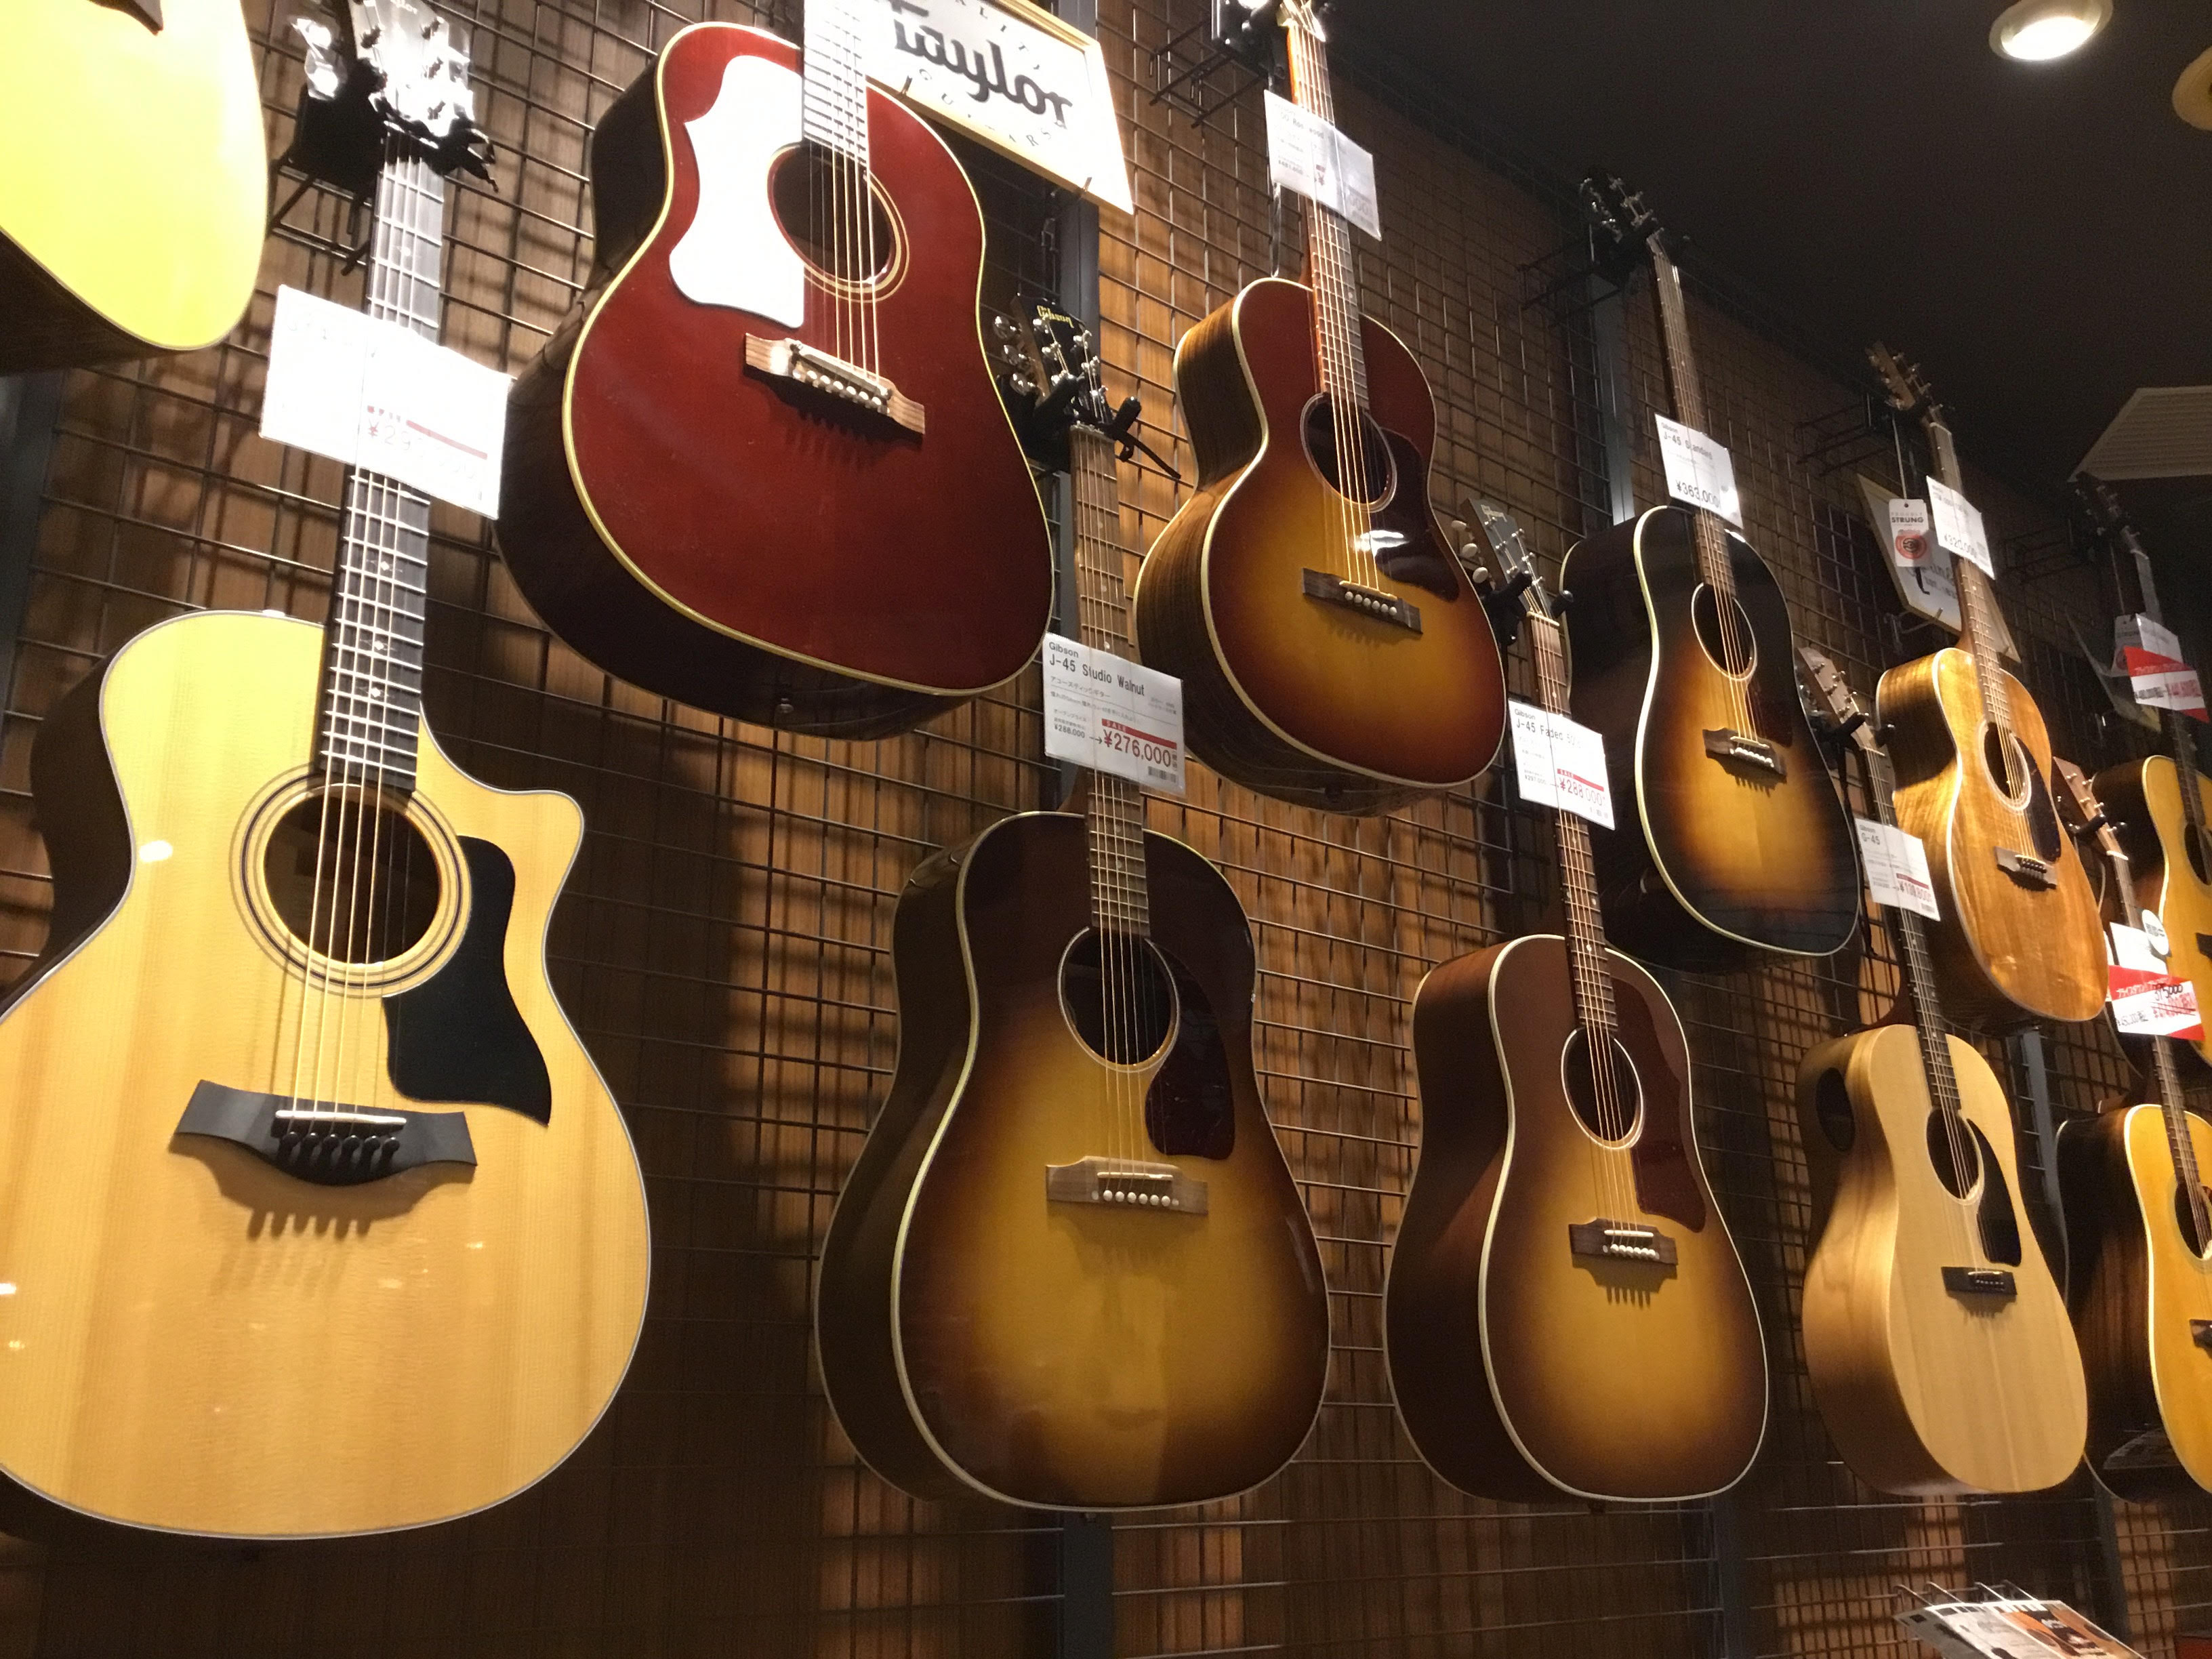 コルトンプラザ店の特価アコースティックギターをご紹介！ どれもお買得品ばかりです。是非この機会をお見逃しなく！ CONTENTSシマムラミュージックカードでのお支払いで5%OFFお支払い方法お問い合わせシマムラミュージックカードでのお支払いで5%OFF 島村楽器店舗にて、「シマムラミュージックカード […]